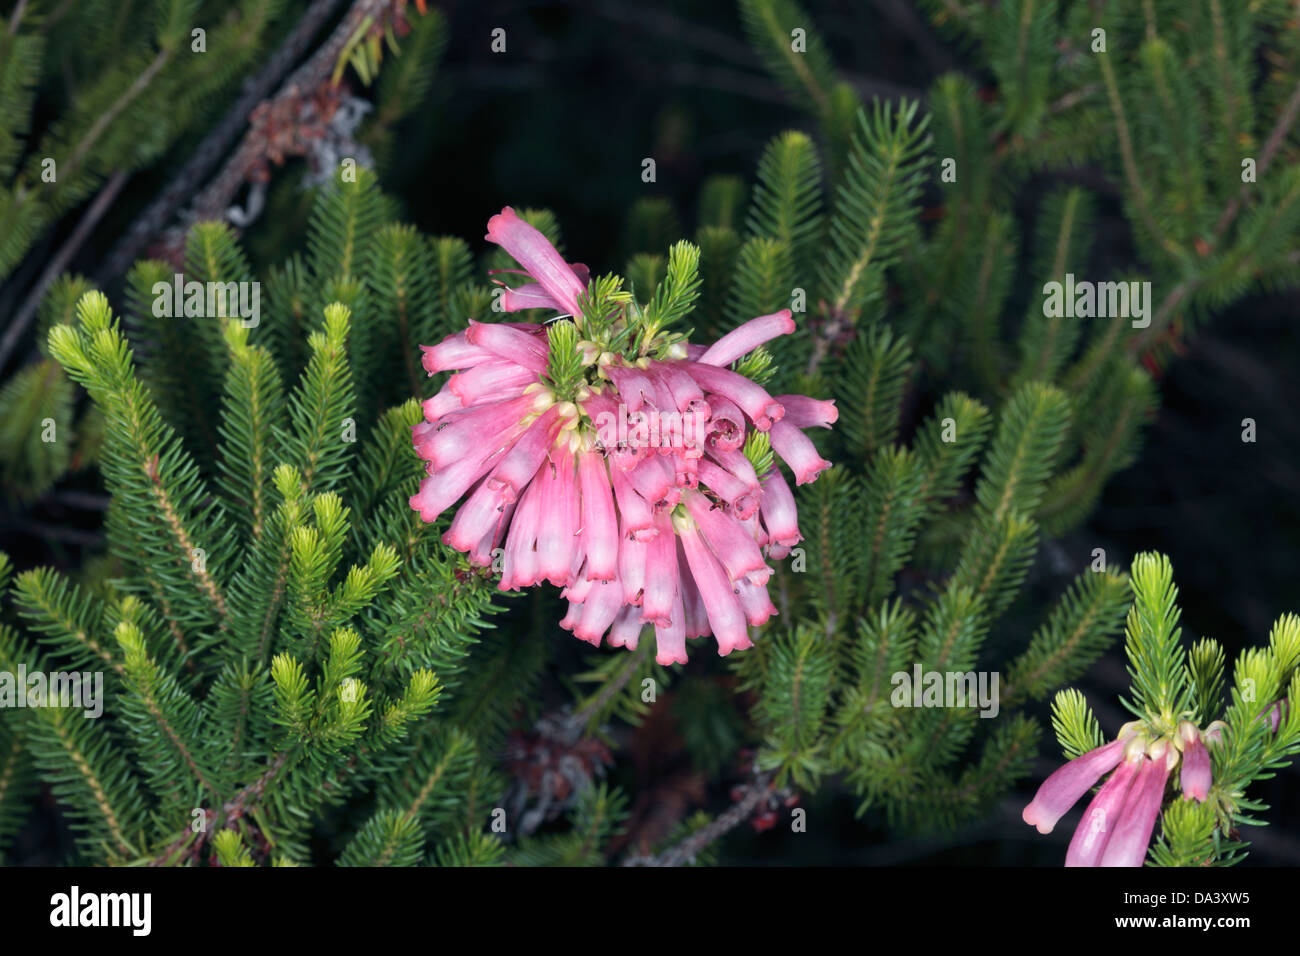 Close-up of Bottlebrush Heath/ Green Heath hybrid- Erica sessilifolia - Family Ericacea Stock Photo